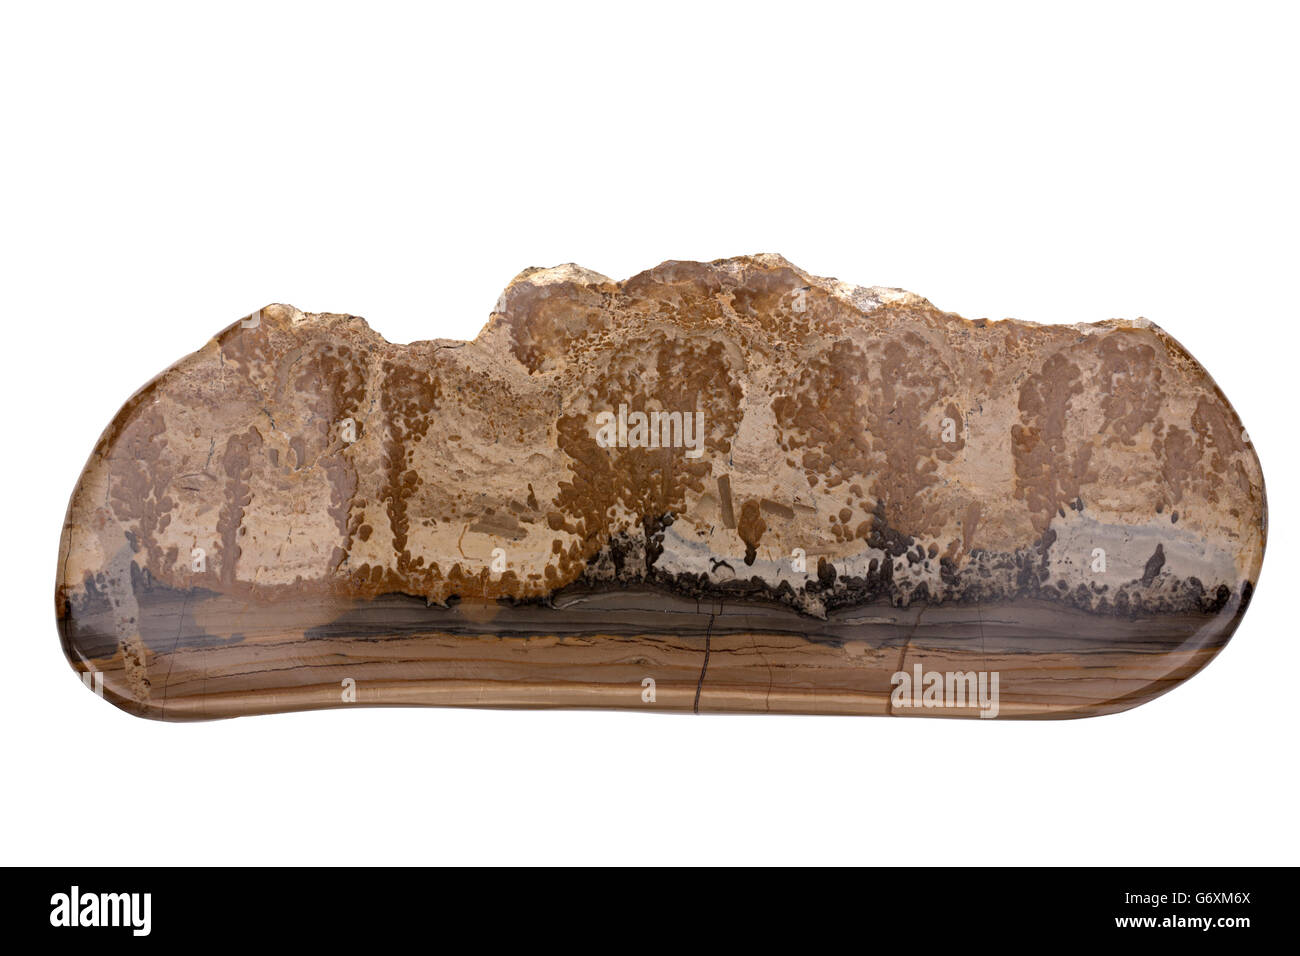 Cotham en paysage ou en est une variété de calcaire stromatolitique rhétique du Groupe de Penarth, trouvé dans le sud du Pays de Galles Banque D'Images